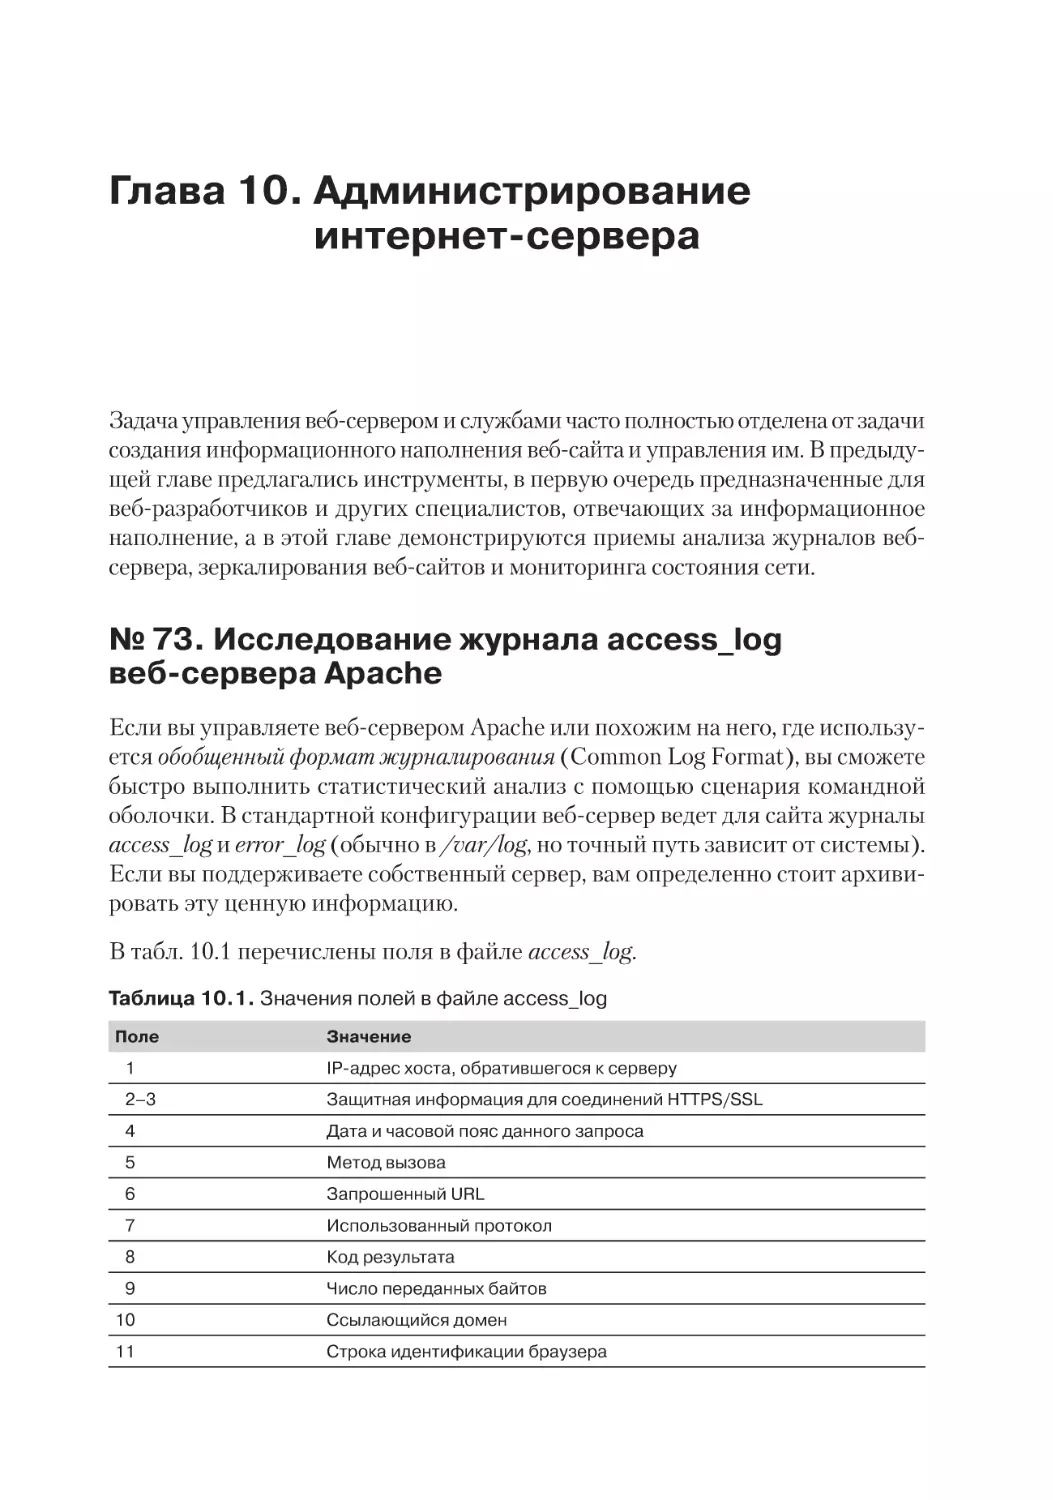 Глава 10. Администрирование интернет-сервера
№ 73. Исследование журнала access_log веб-сервера Apache